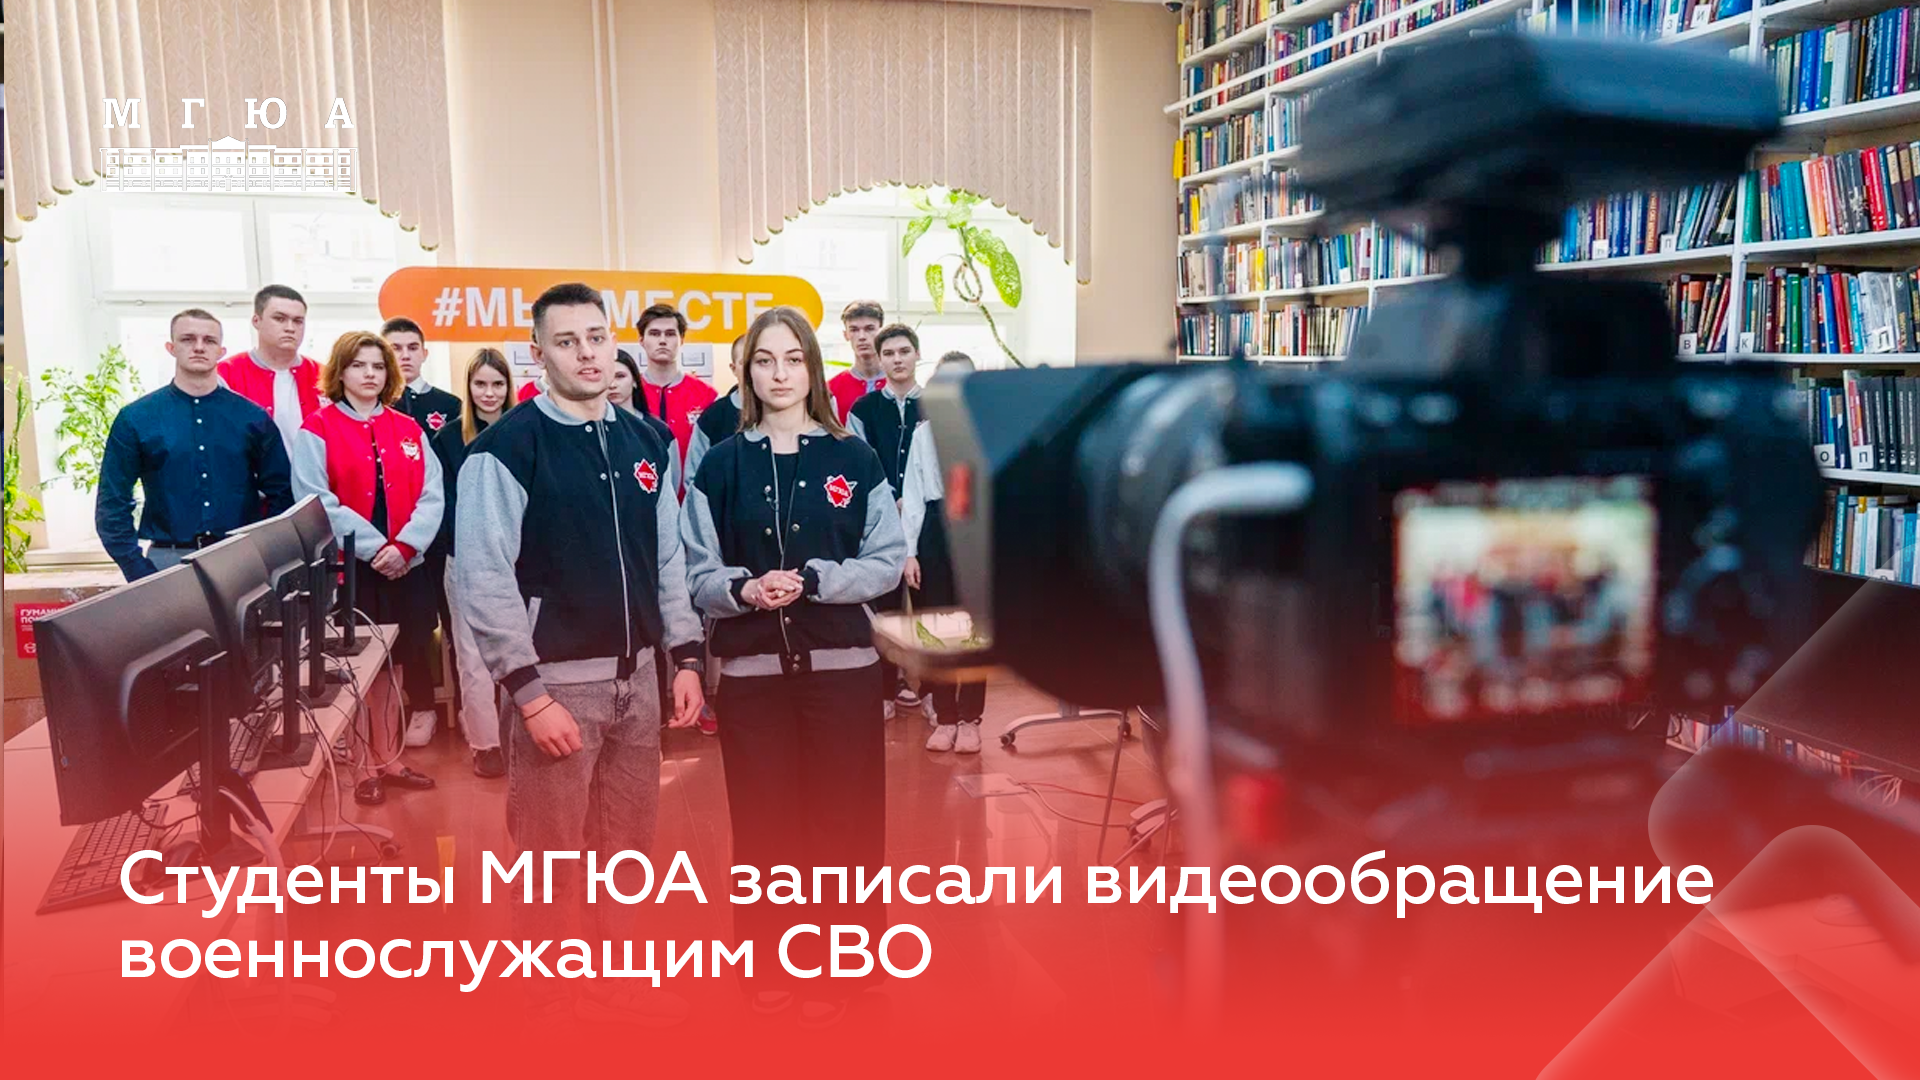 Студенты Университета имени О.Е. Кутафина (МГЮА) записали
видеообращение к военнослужащим СВО